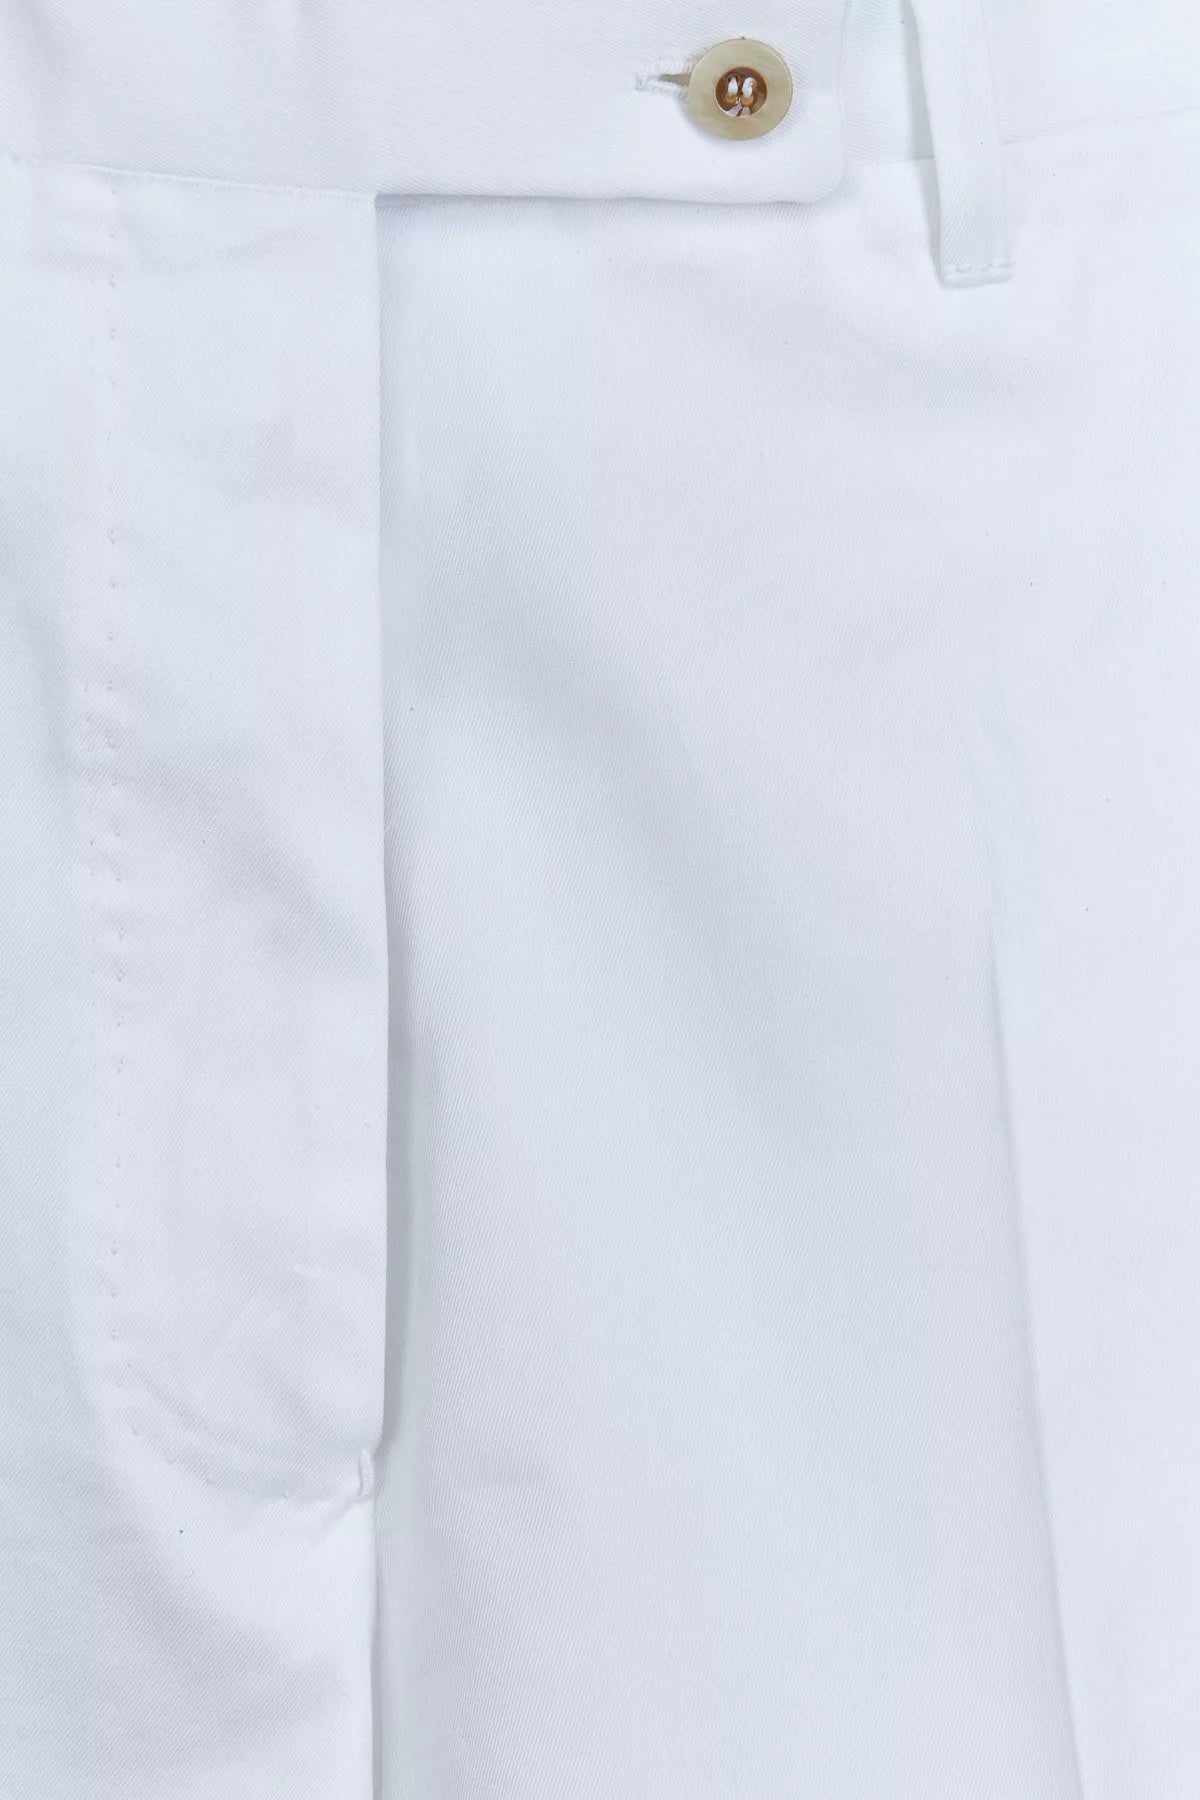 Giuliva-Heritage-The-Nina-Shorts_Cotton-Twill-Optical-White-Amarees